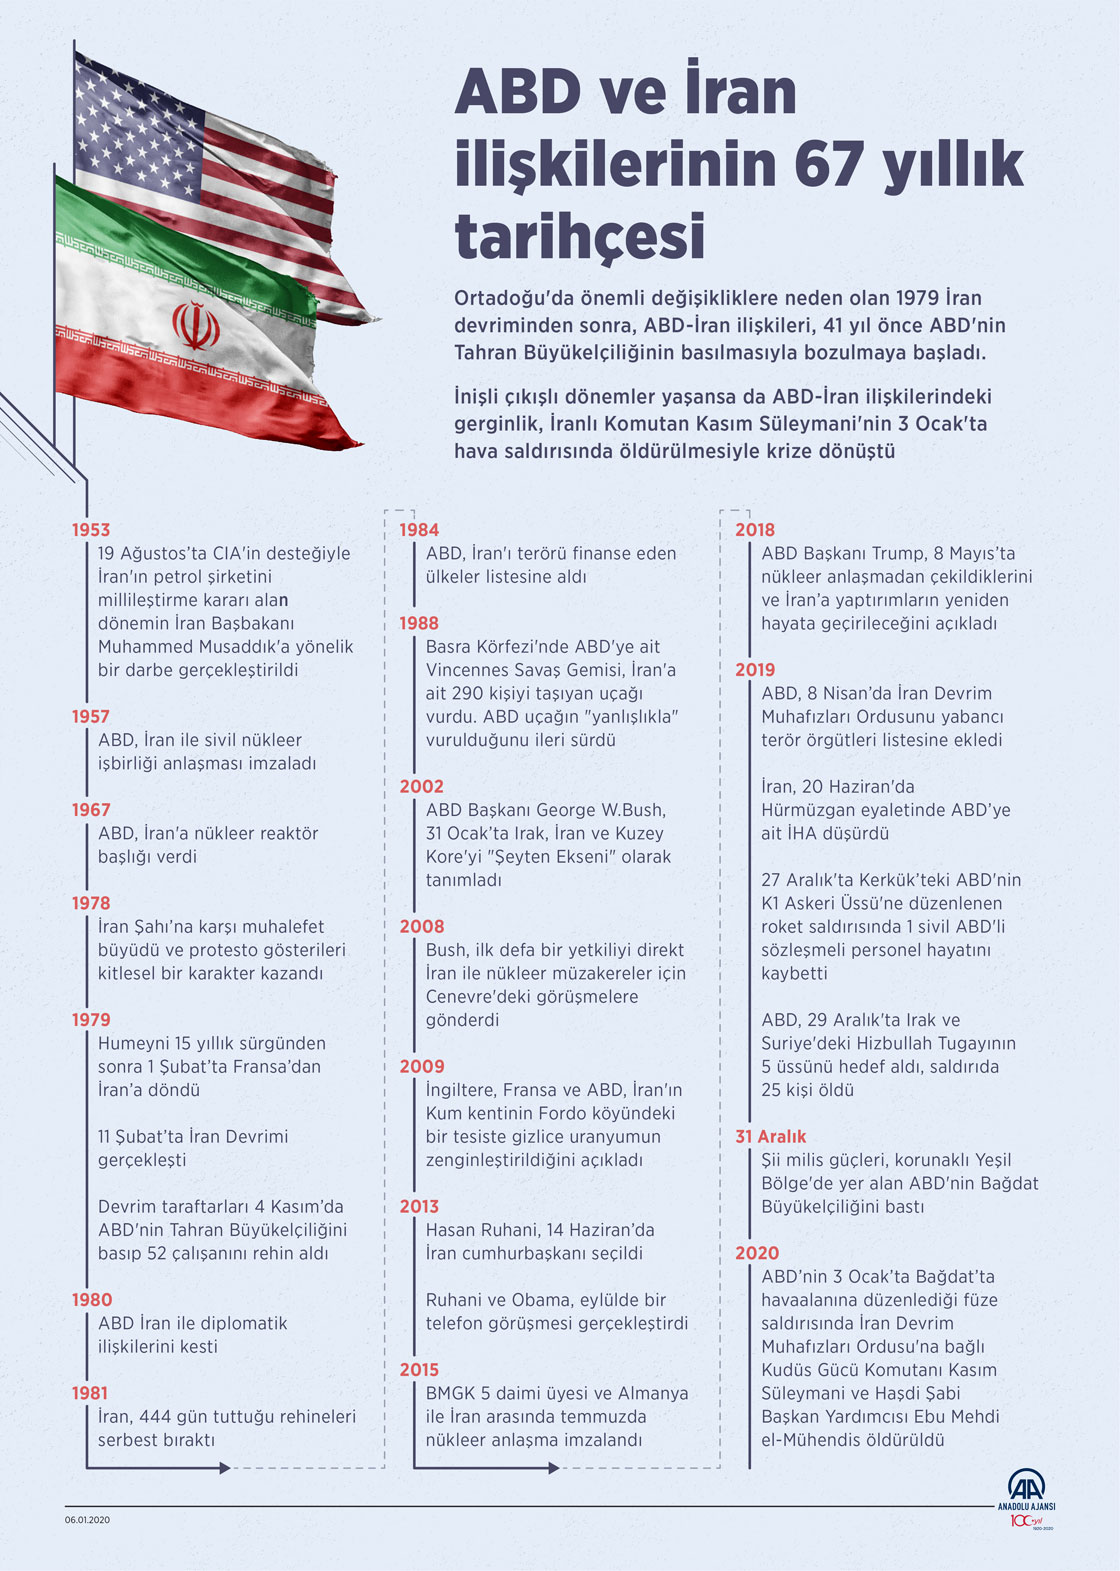  ABD ve İran ilişkilerinin 67 yıllık tarihçesi